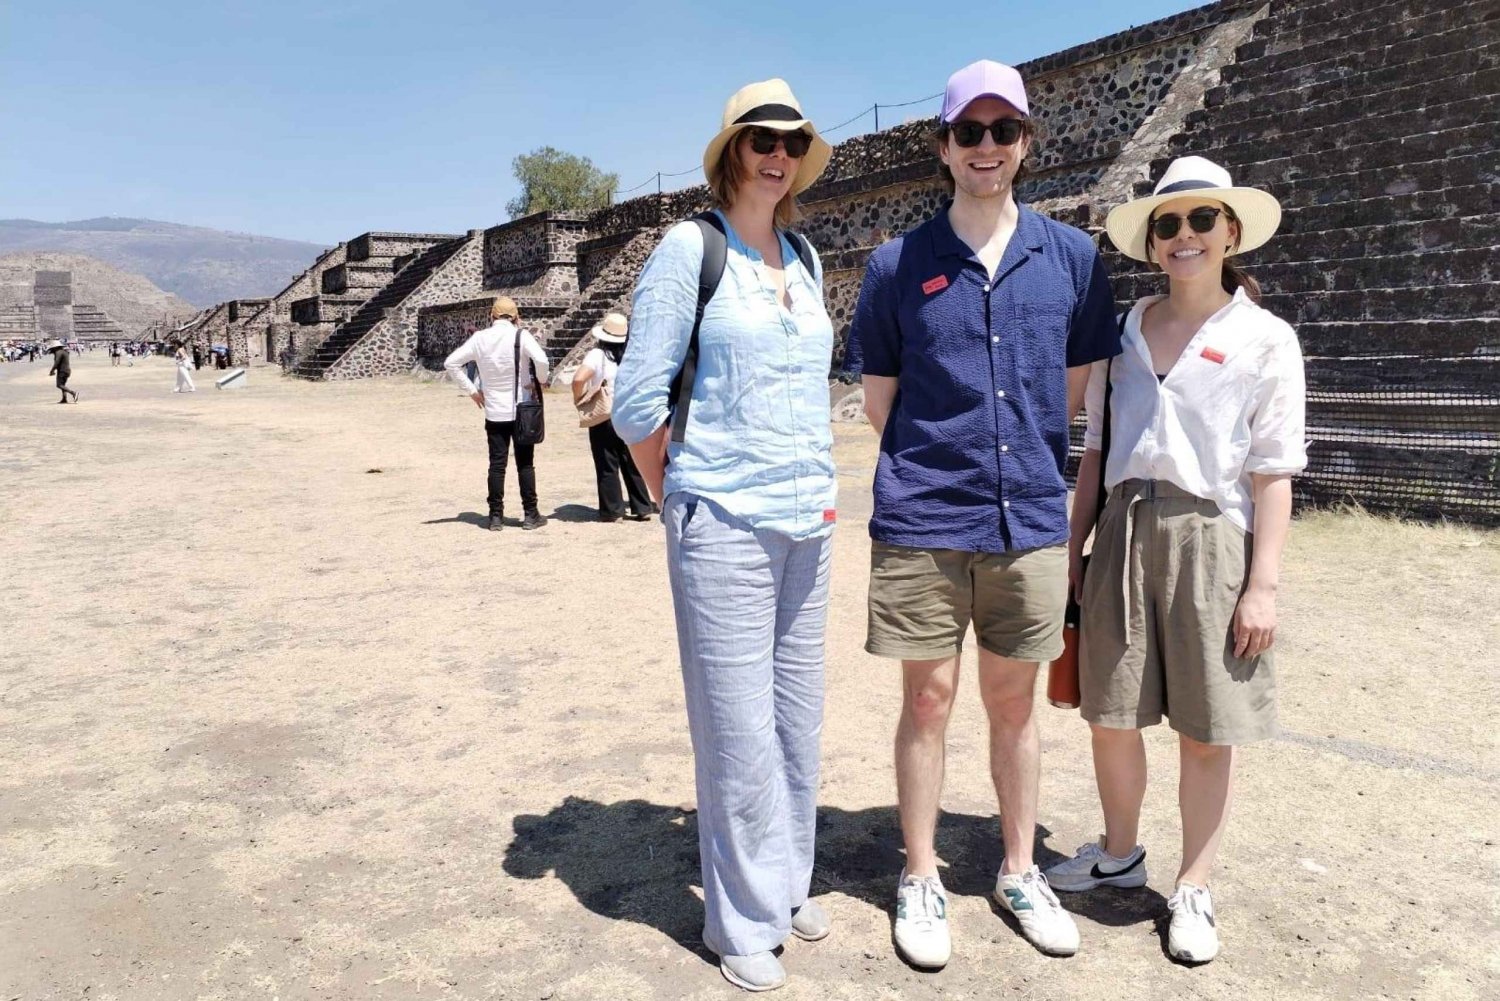 excursión de medio día por la mañana pirámides Teotihuacán